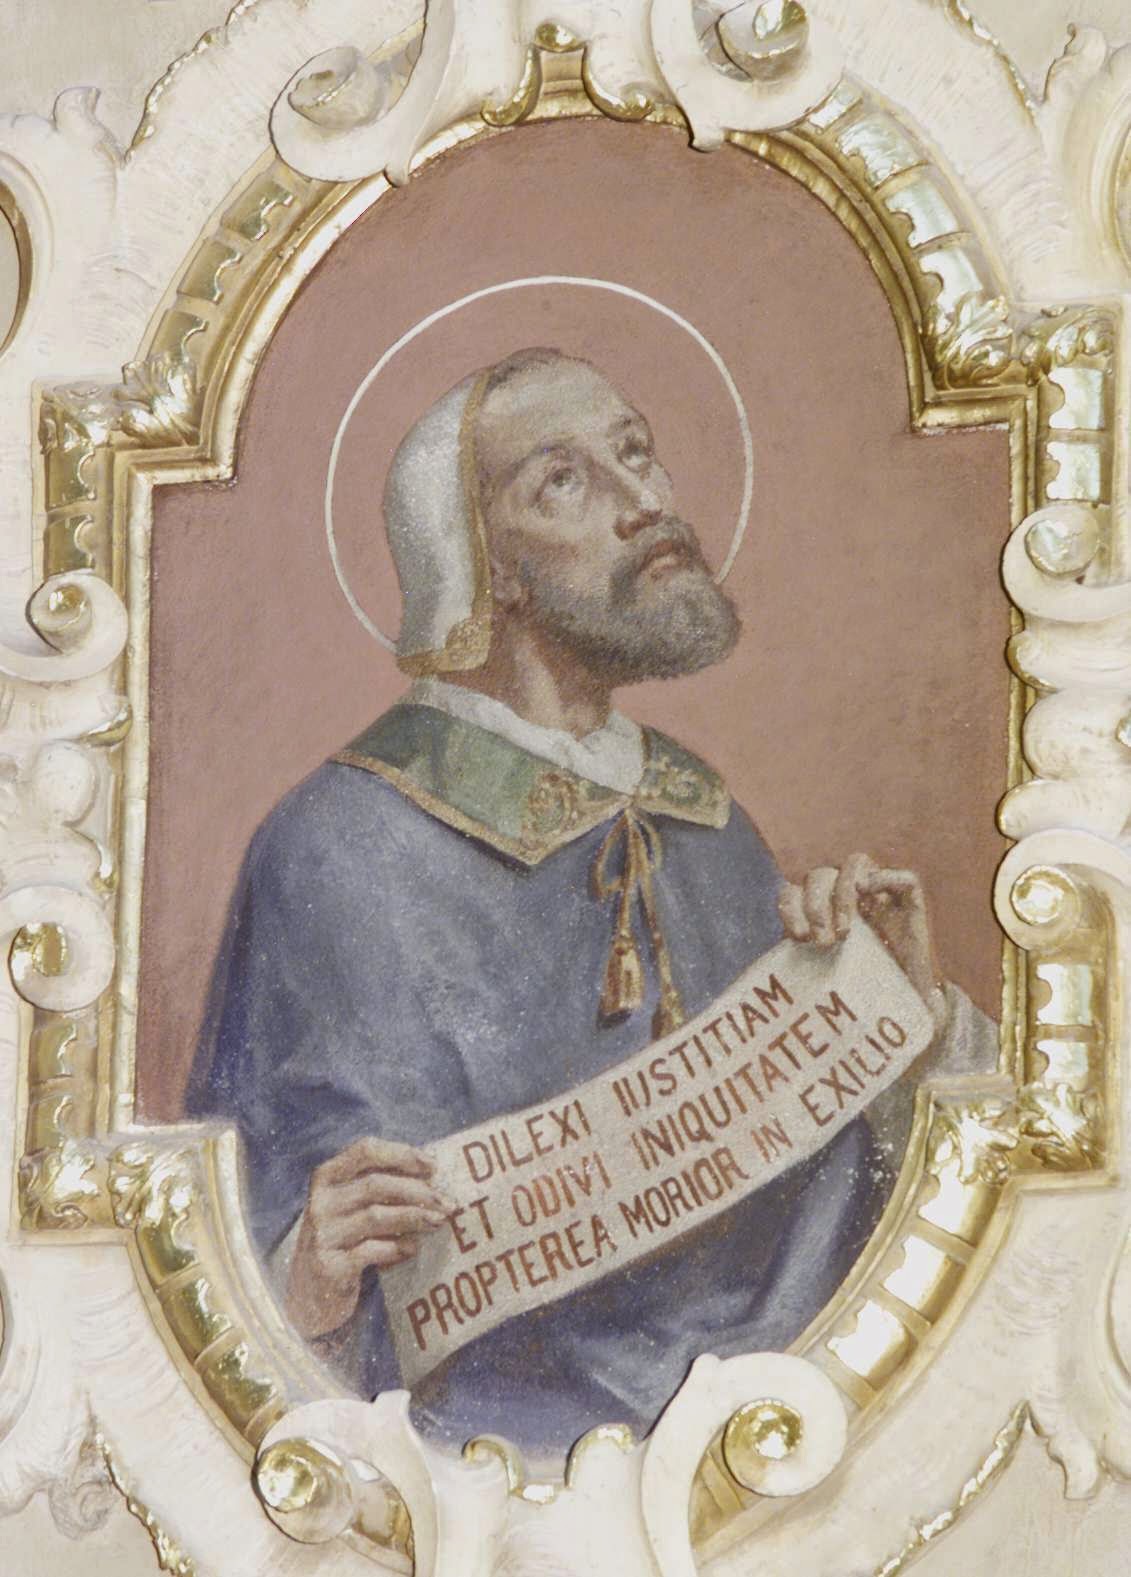 Św. Grzegorz VII, Papież. Dilexi iustitiam et odivi iniquitatem, propterea morior in exilio.